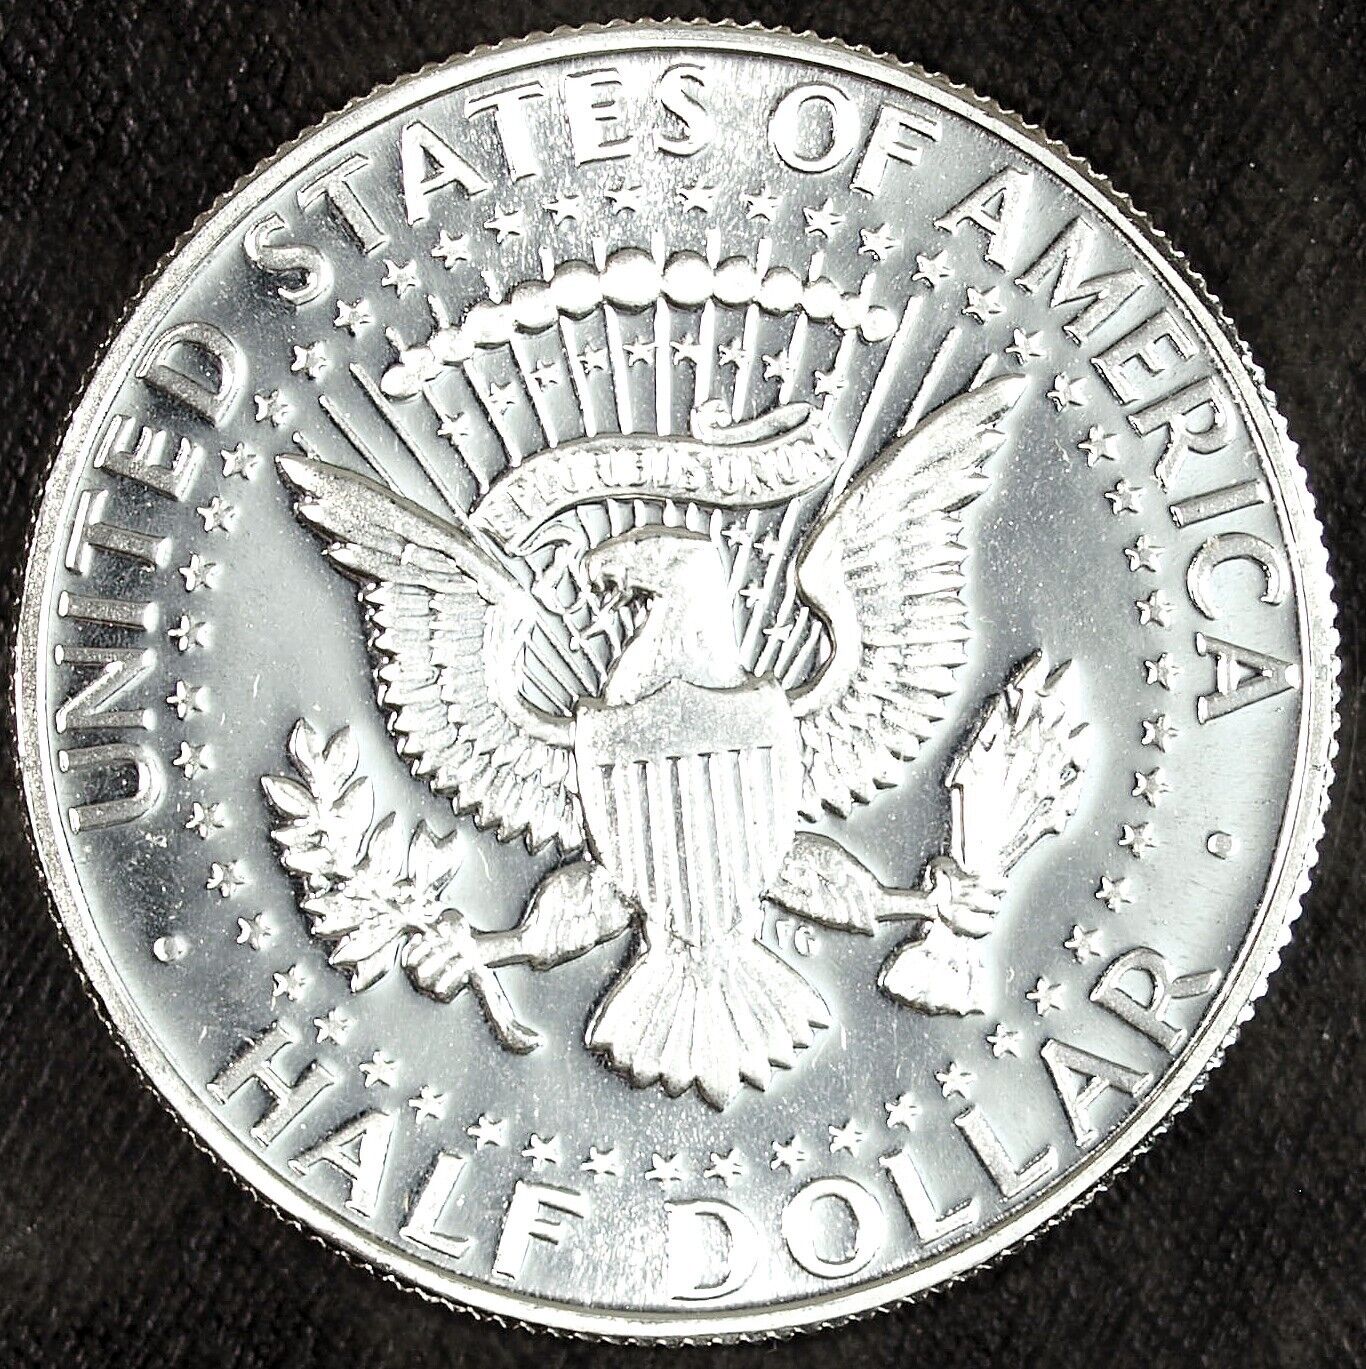 1965 SMS Brilliant Uncirculated Kennedy Silver Half Dollar ☆☆ 410